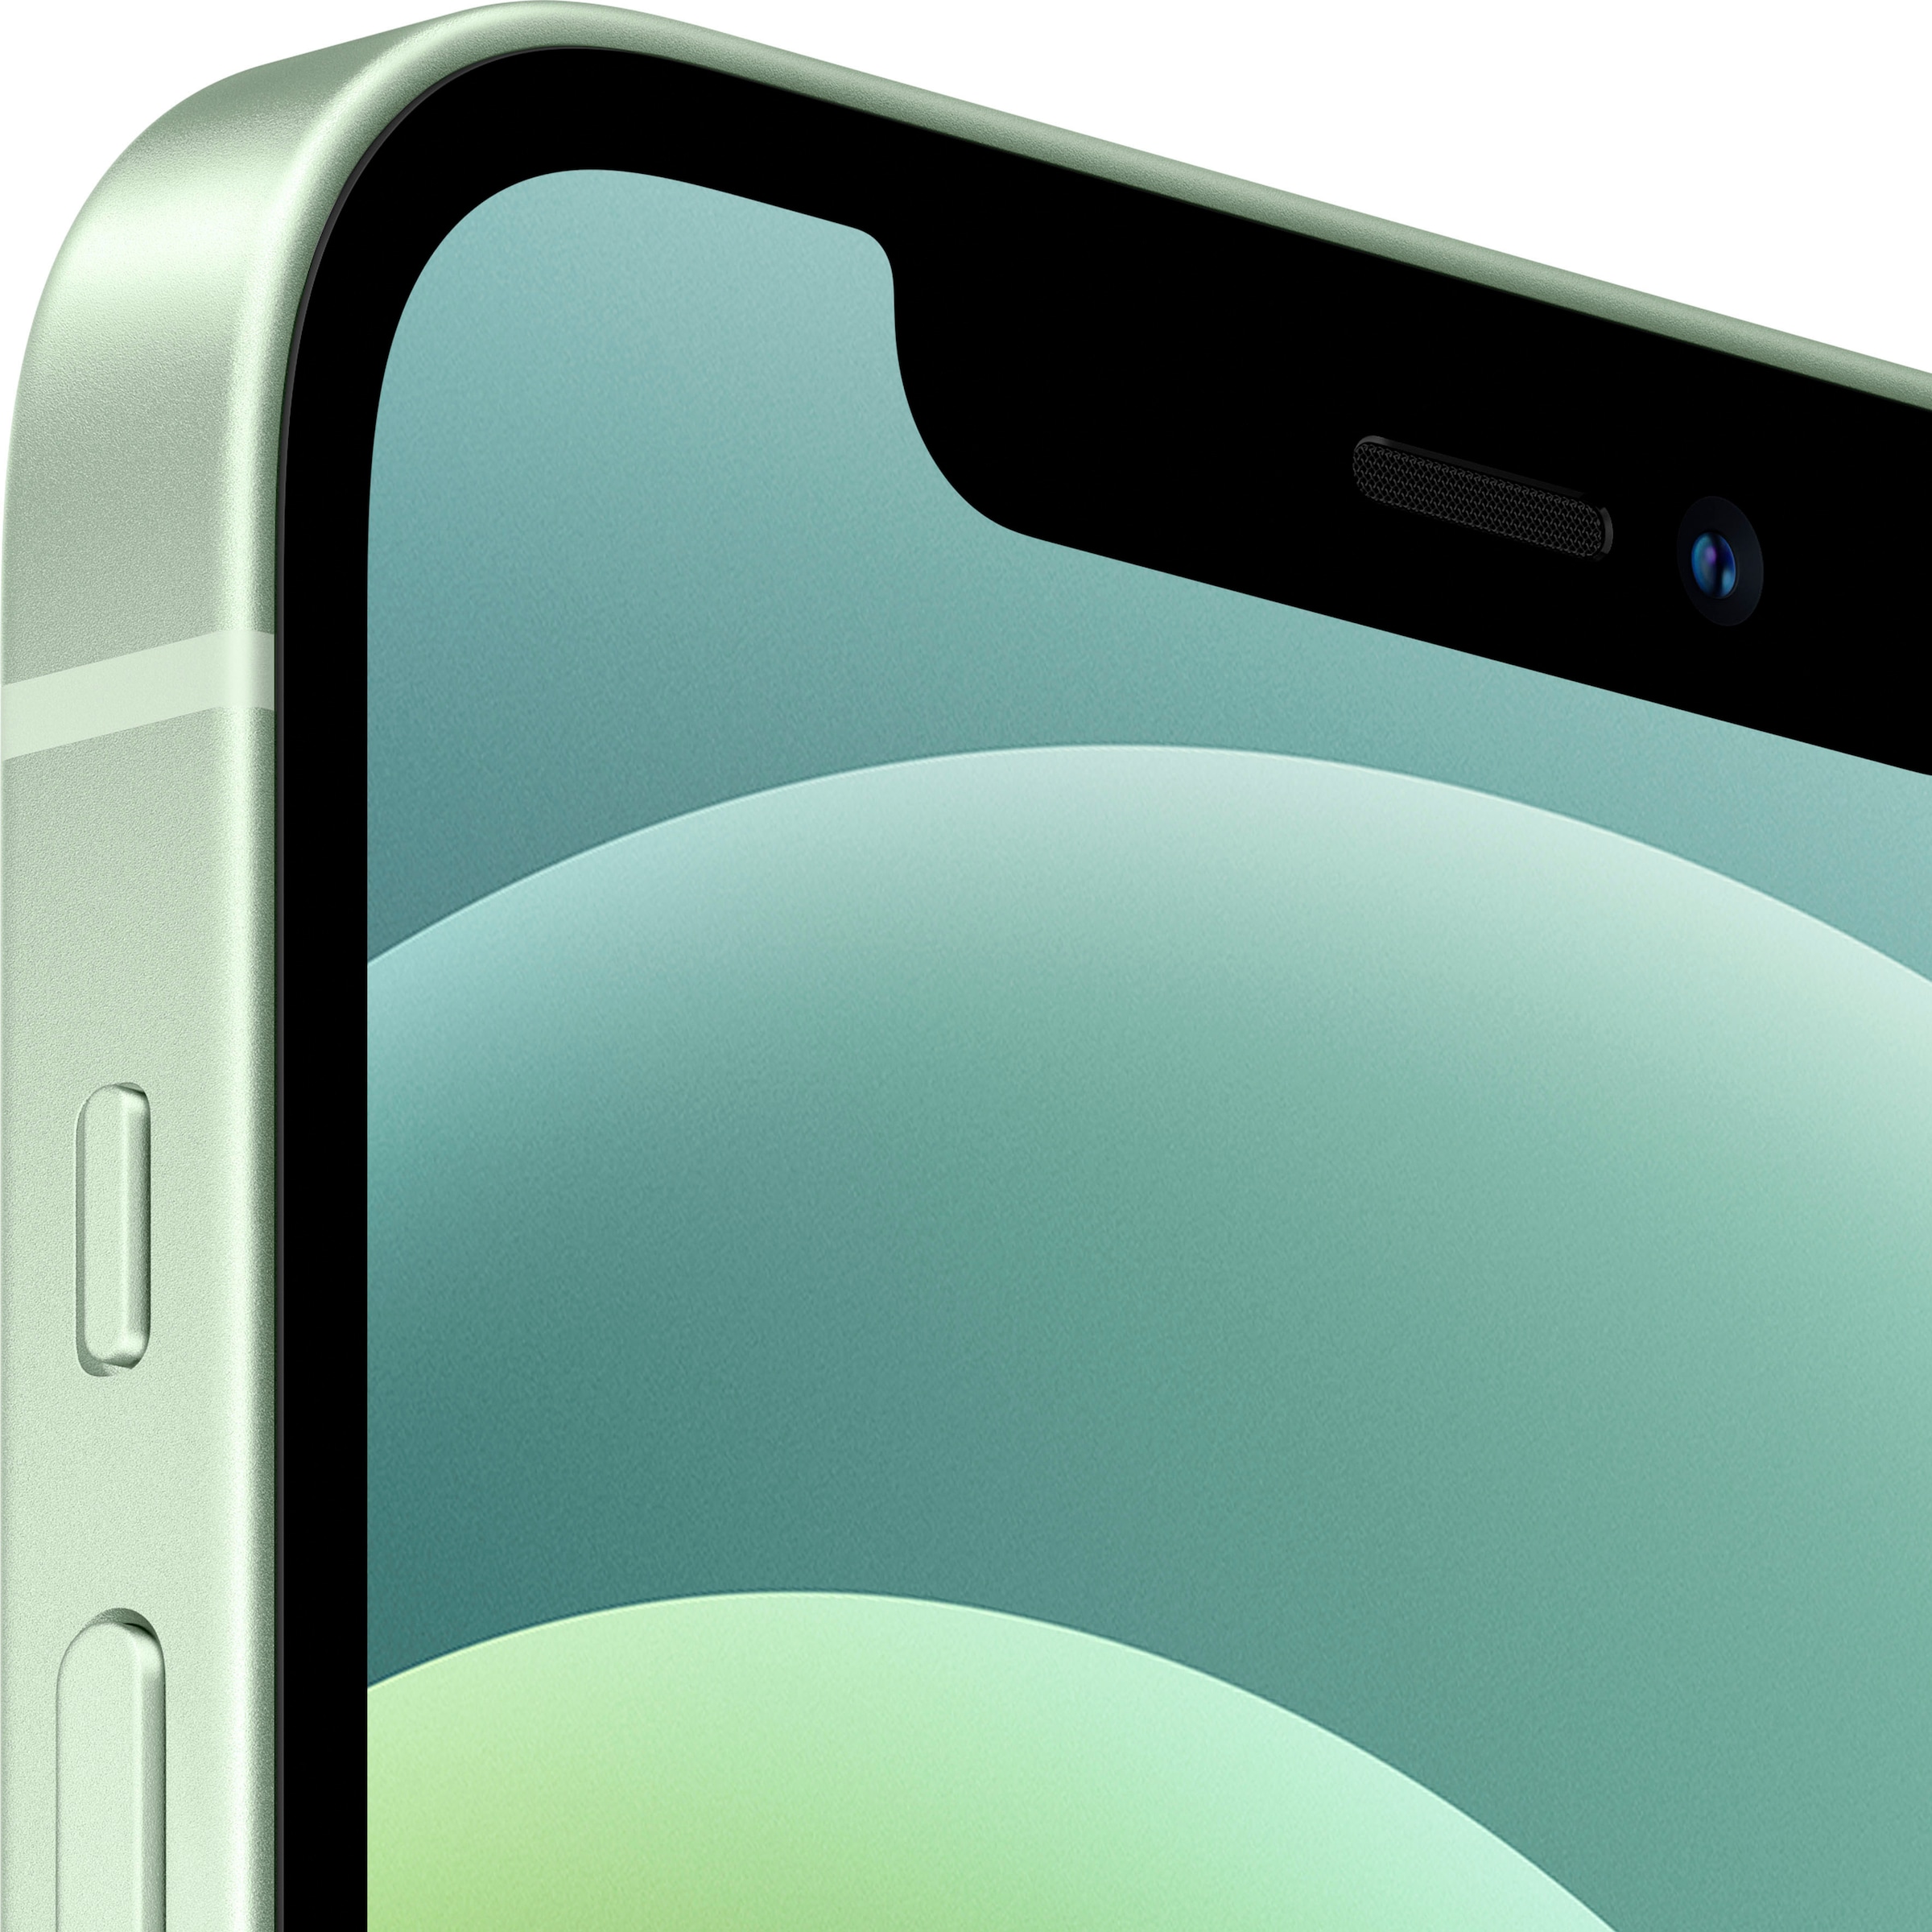 Apple Smartphone »iPhone 12 128GB«, grün, 15,5 cm/6,1 Zoll, 128 GB  Speicherplatz, 12 MP Kamera, ohne Strom Adapter und Kopfhörer, kompatibel  mit AirPods, Earpods kaufen bei OTTO